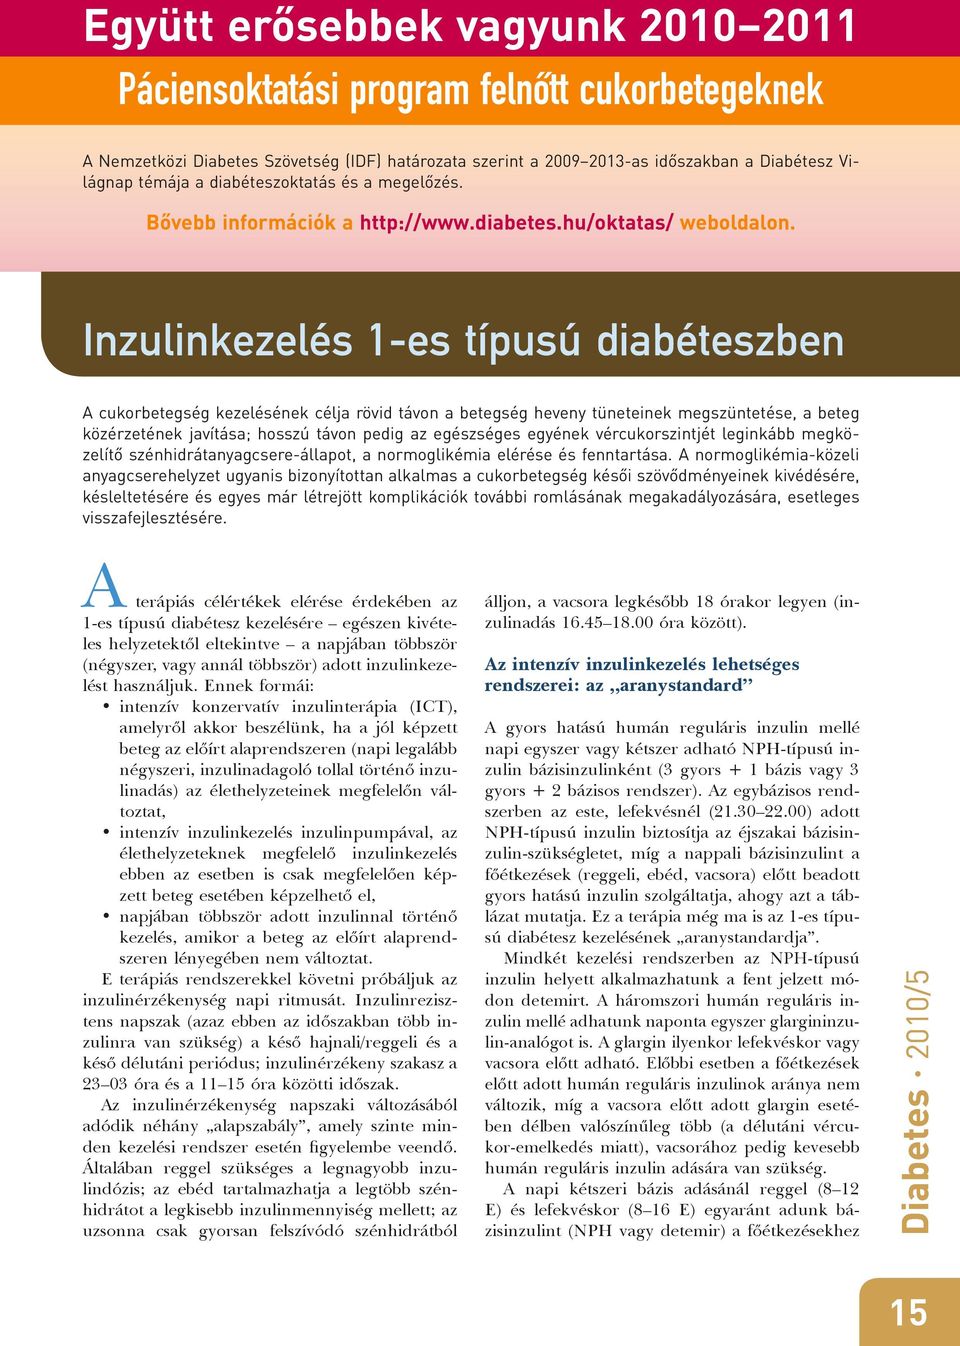 Inzulinkezelés 1-es típusú diabéteszben A cukorbetegség kezelésének célja rövid távon a betegség heveny tüneteinek megszüntetése, a beteg közérzetének javítása; hosszú távon pedig az egészséges